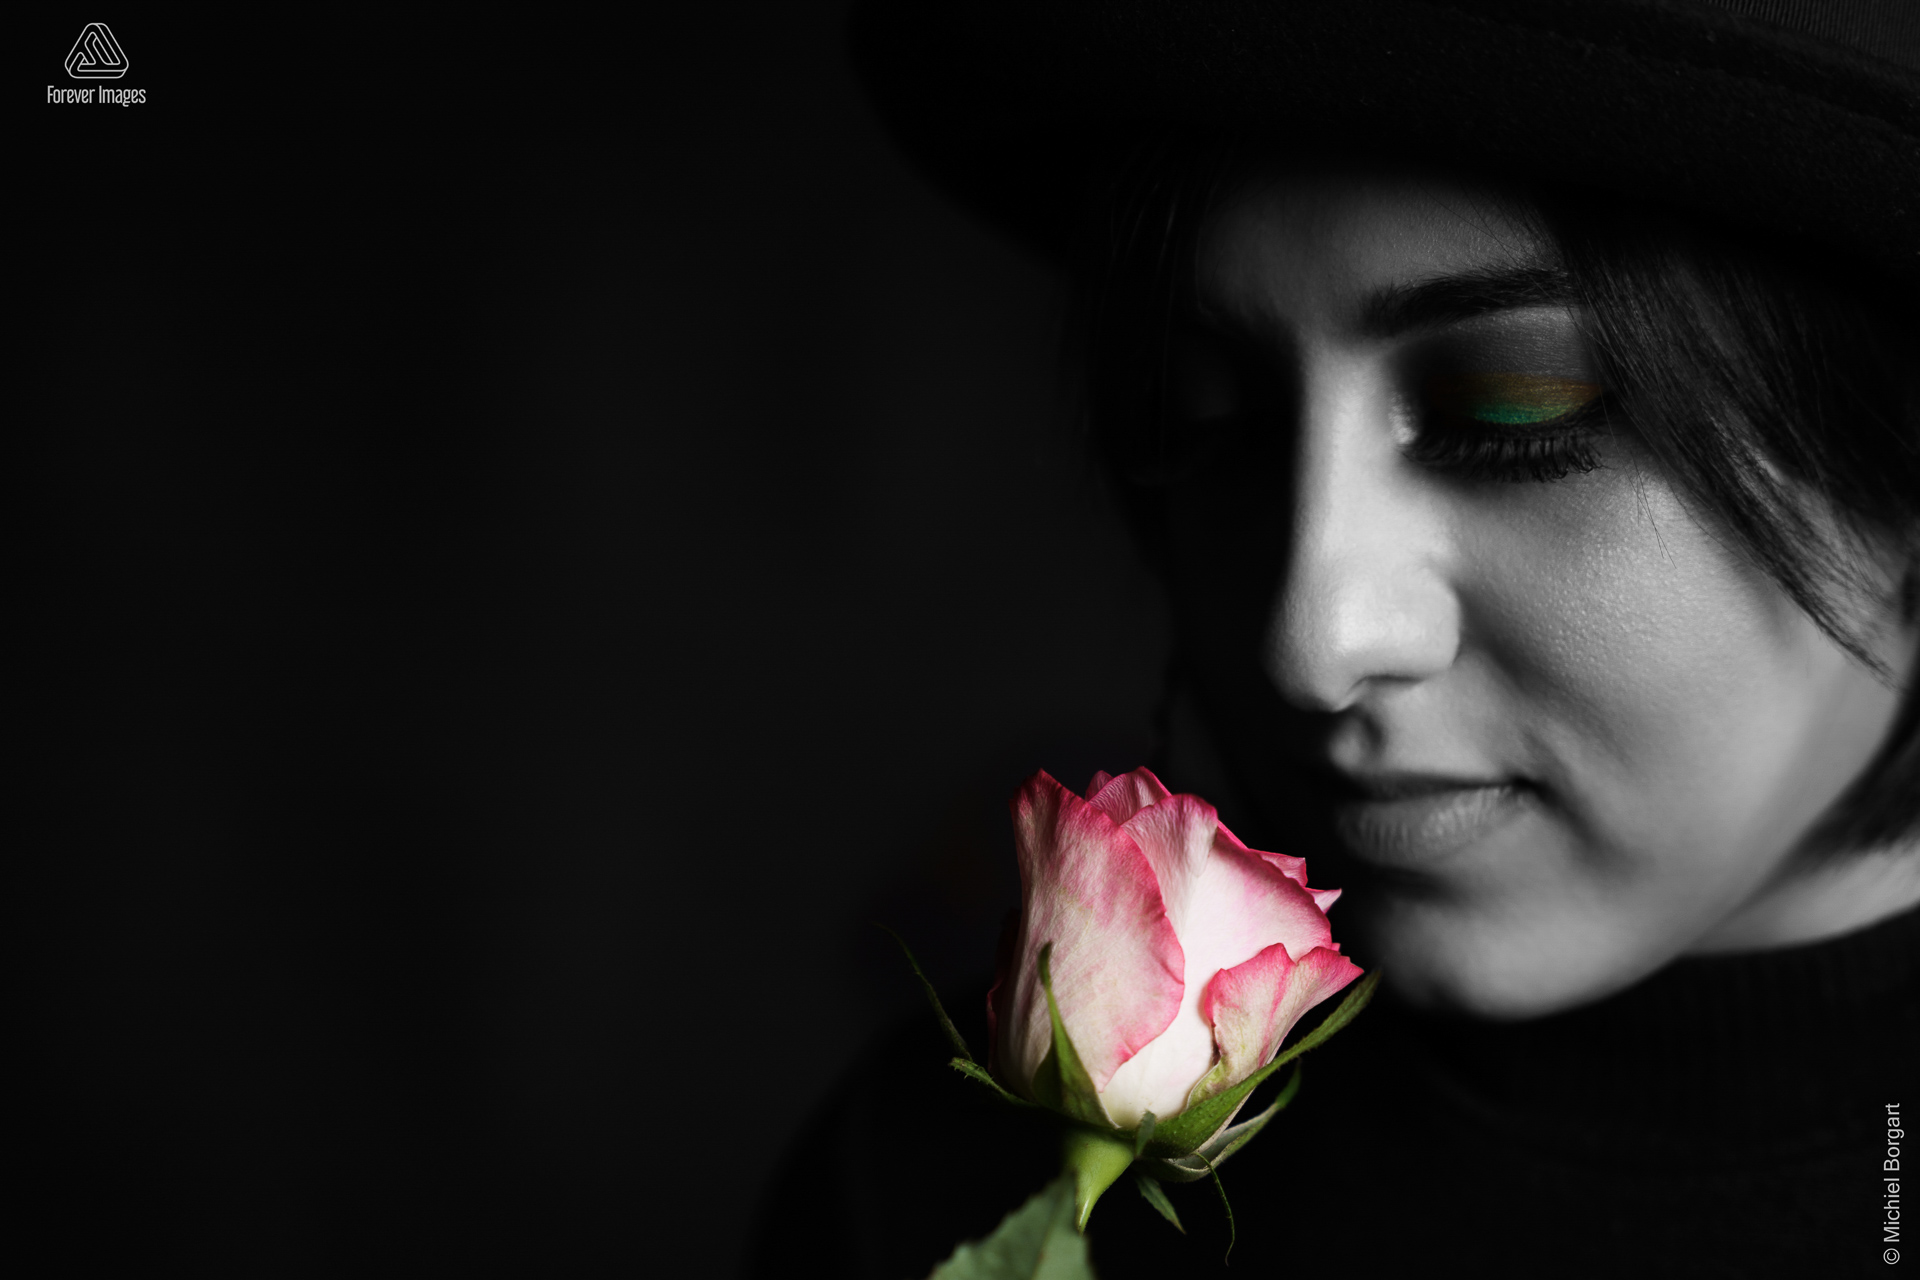 Portretfoto zwart-wit low key selective color jonge dame ruikt aan een roos | Arfa | Portretfotograaf Michiel Borgart - Forever Images.